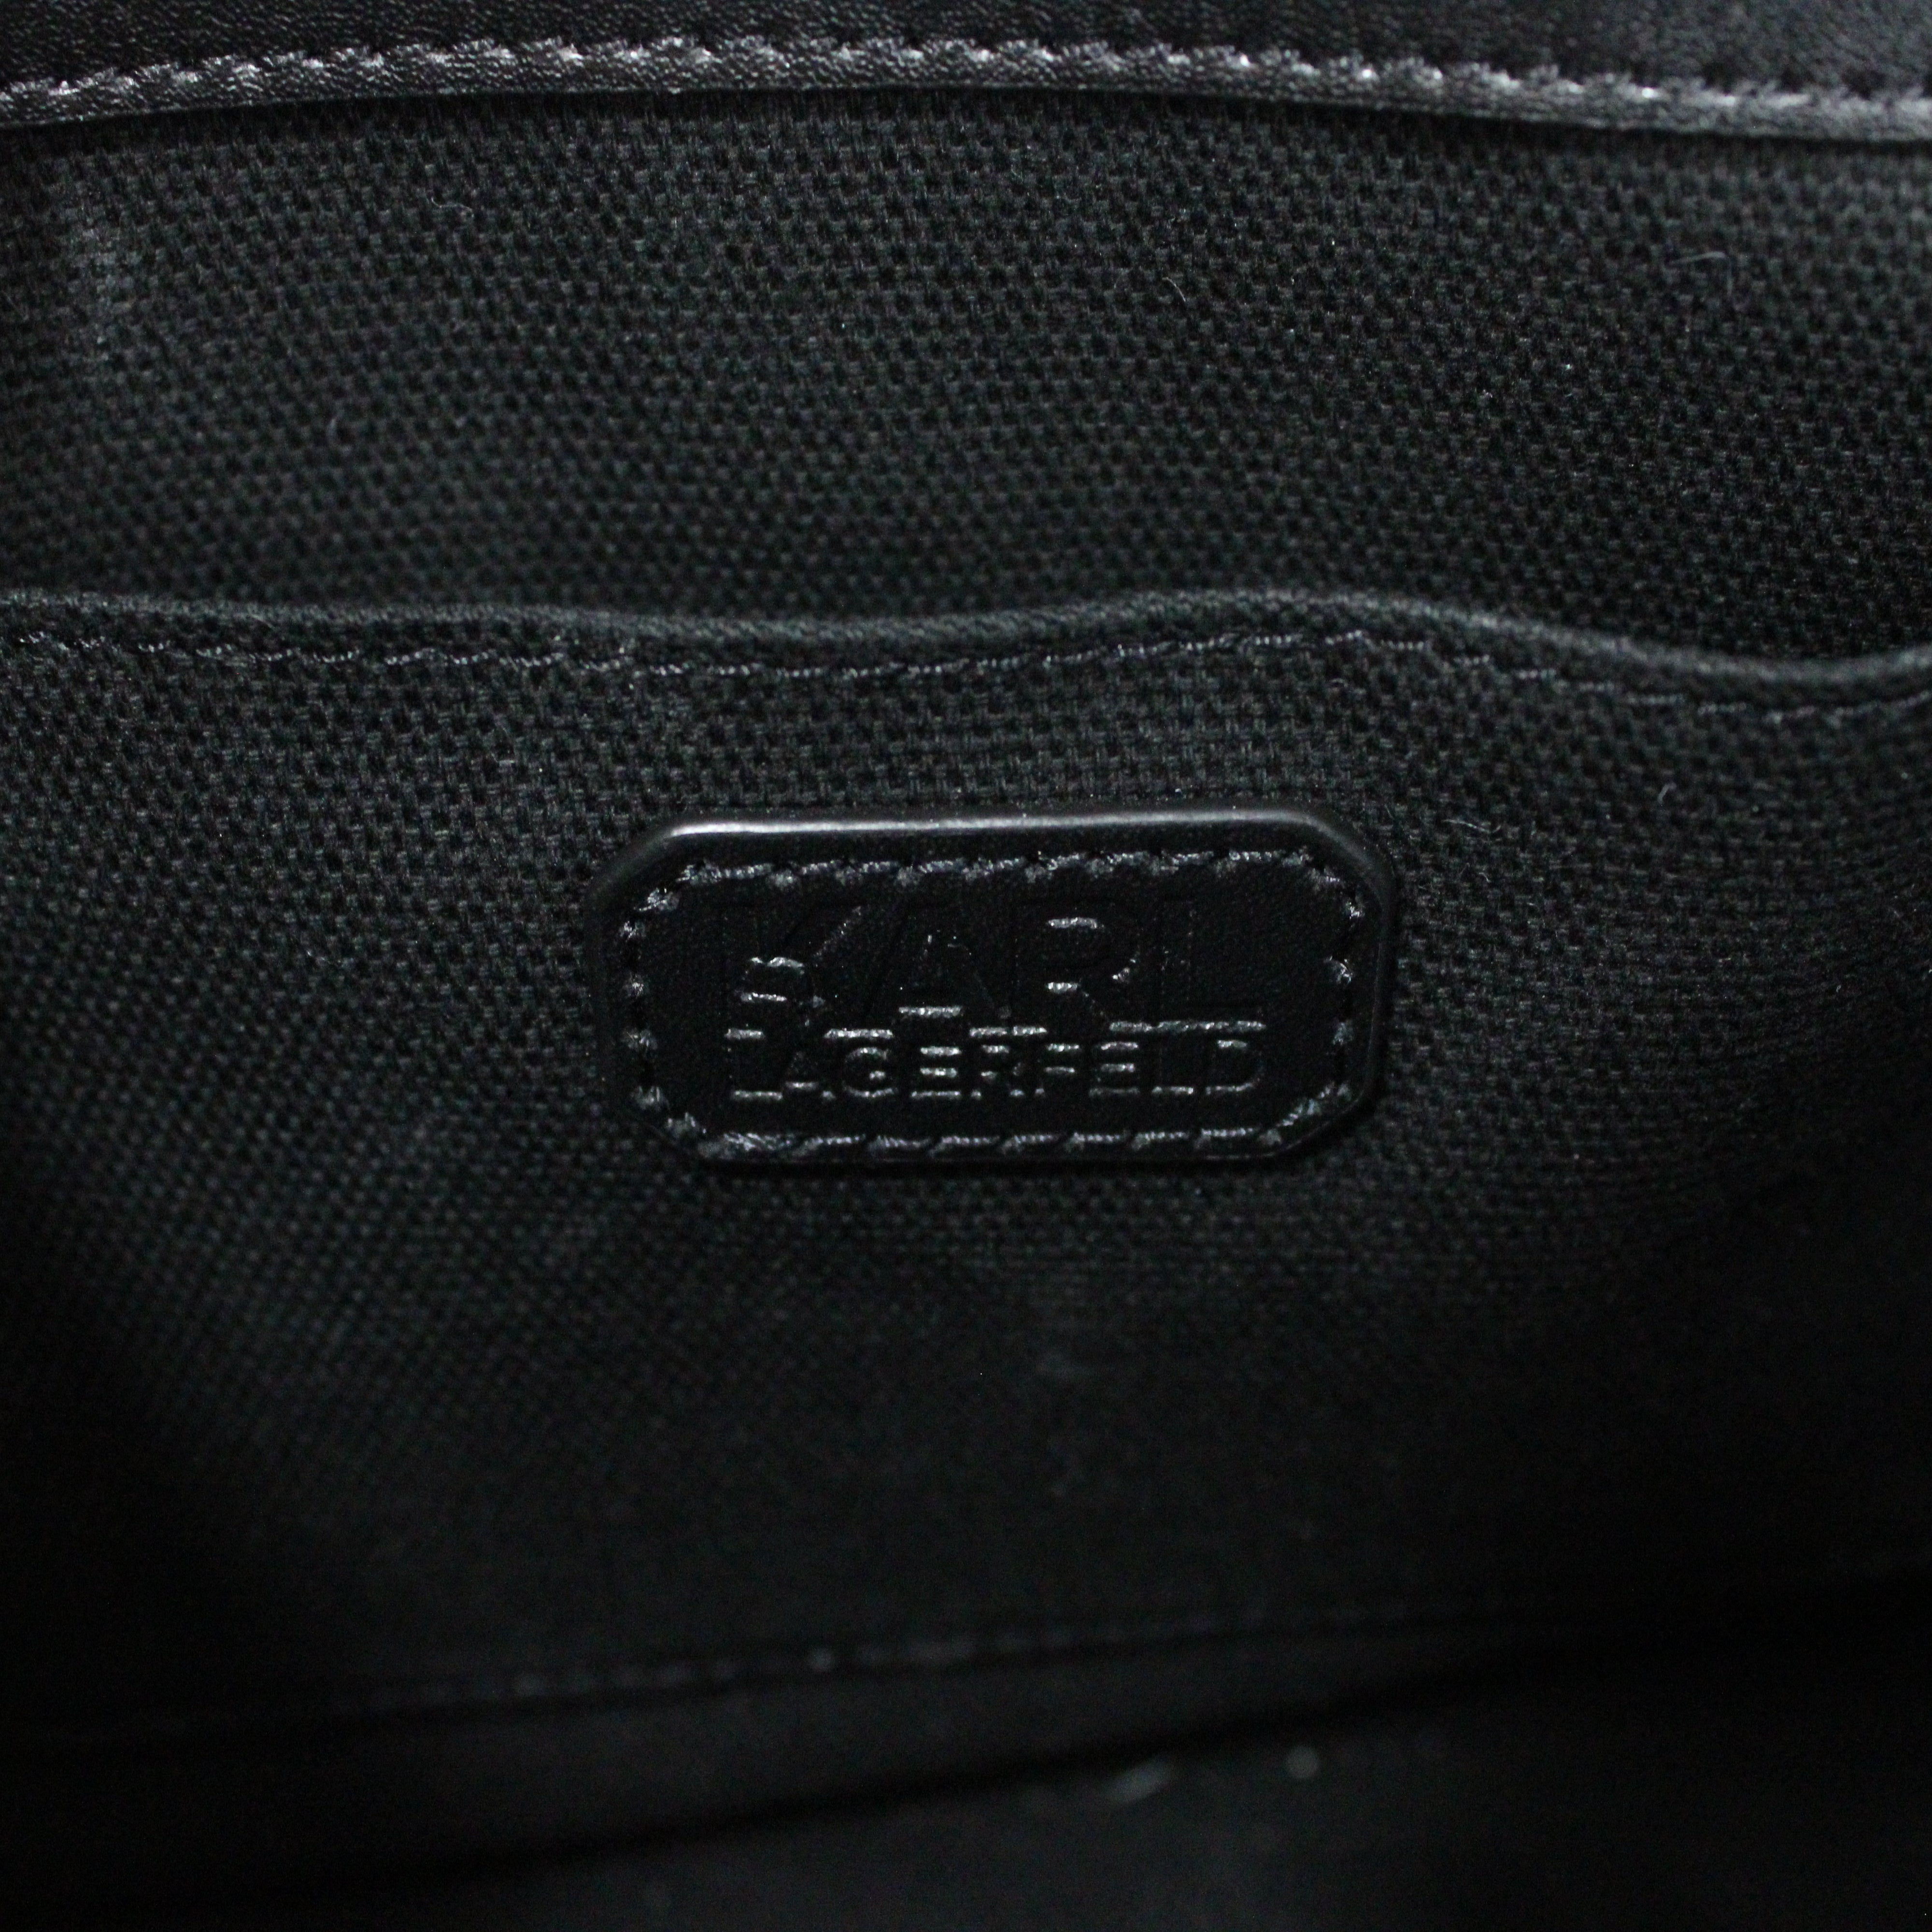 Karl Lagerfeld Classic Black Shoulder Bag